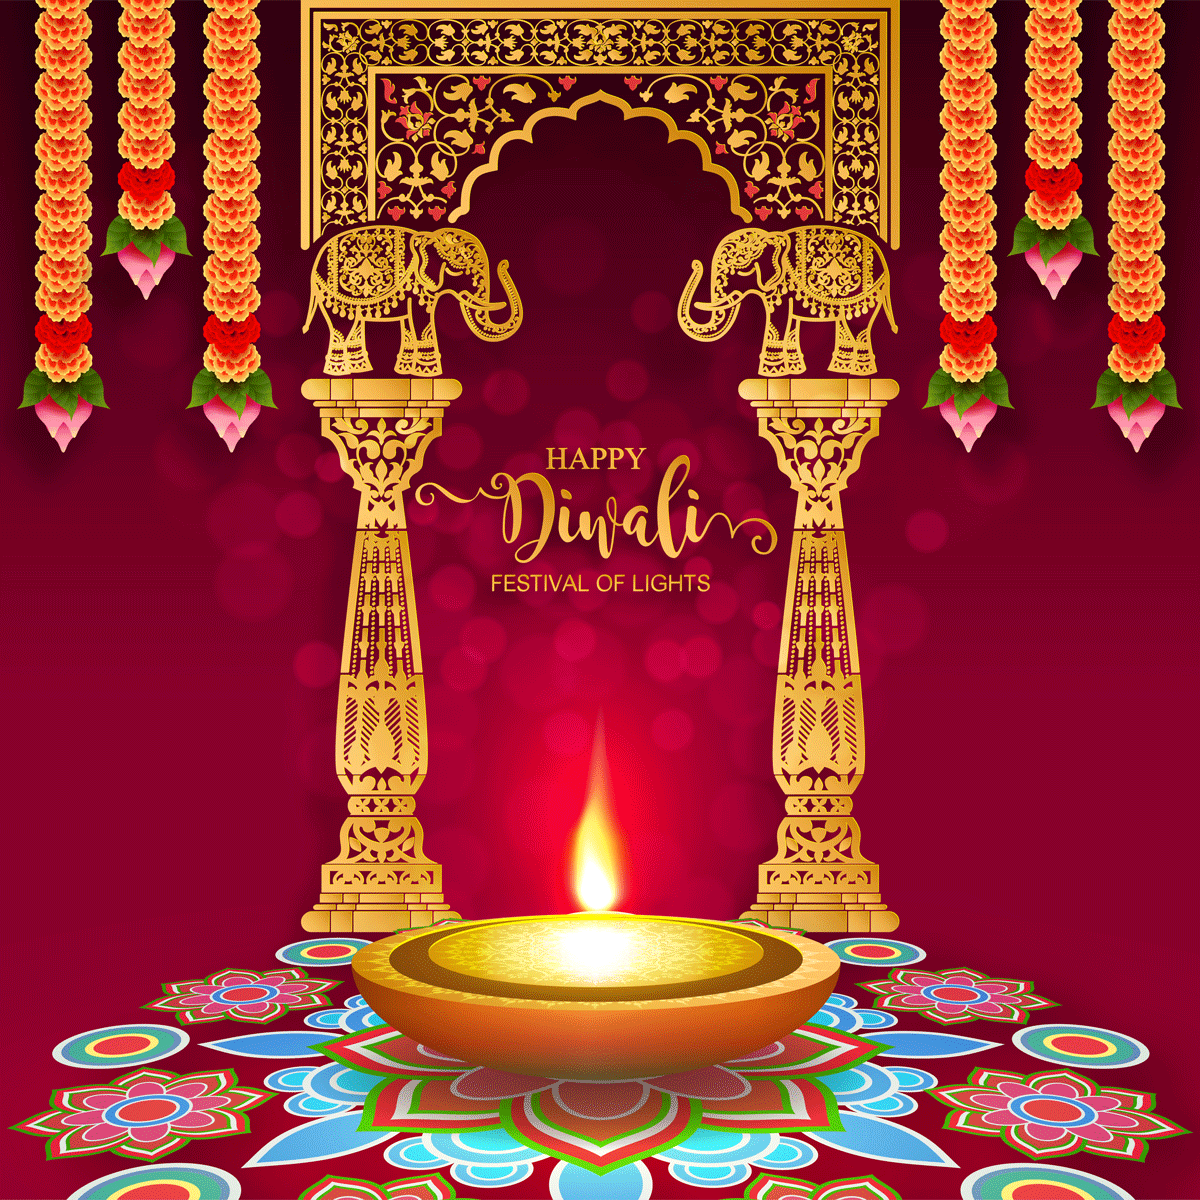 排灯节豪华矢量贺卡 Diwali Luxury Vector Greeting Card插图8